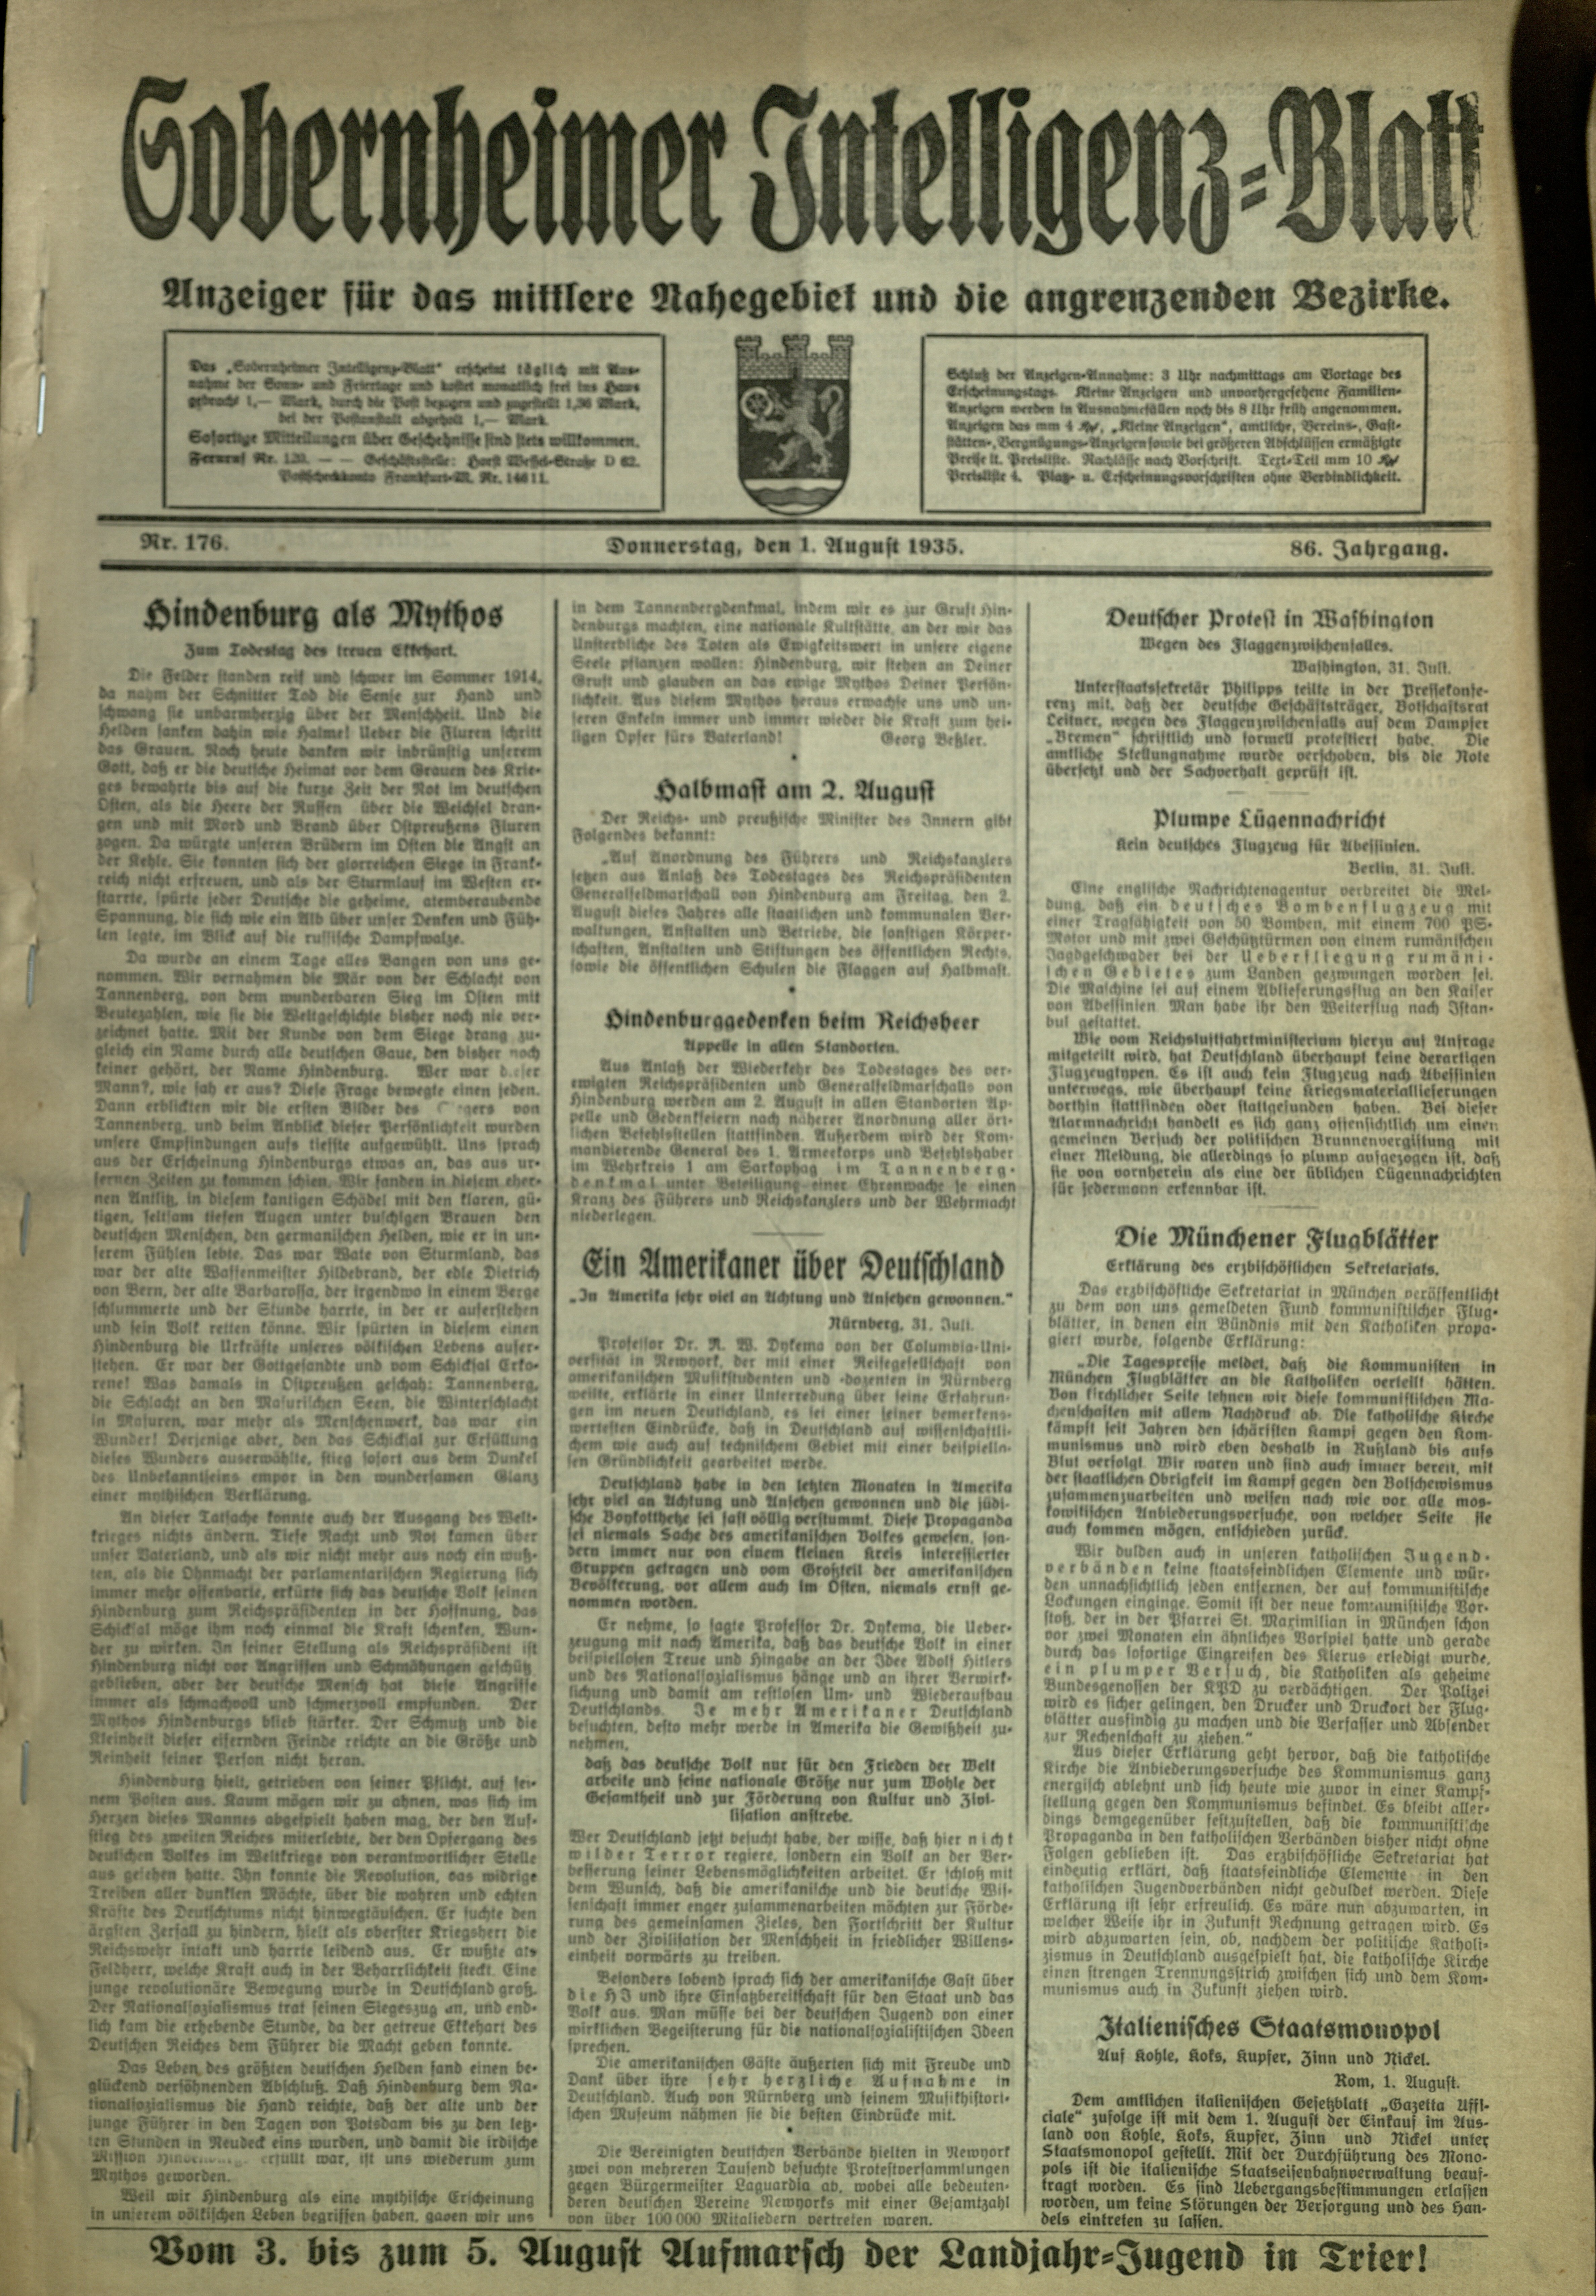 Zeitung: Sobernheimer Intelligenzblatt; August 1935, Jg. 86 Nr. 176 (Heimatmuseum Bad Sobernheim CC BY-NC-SA)